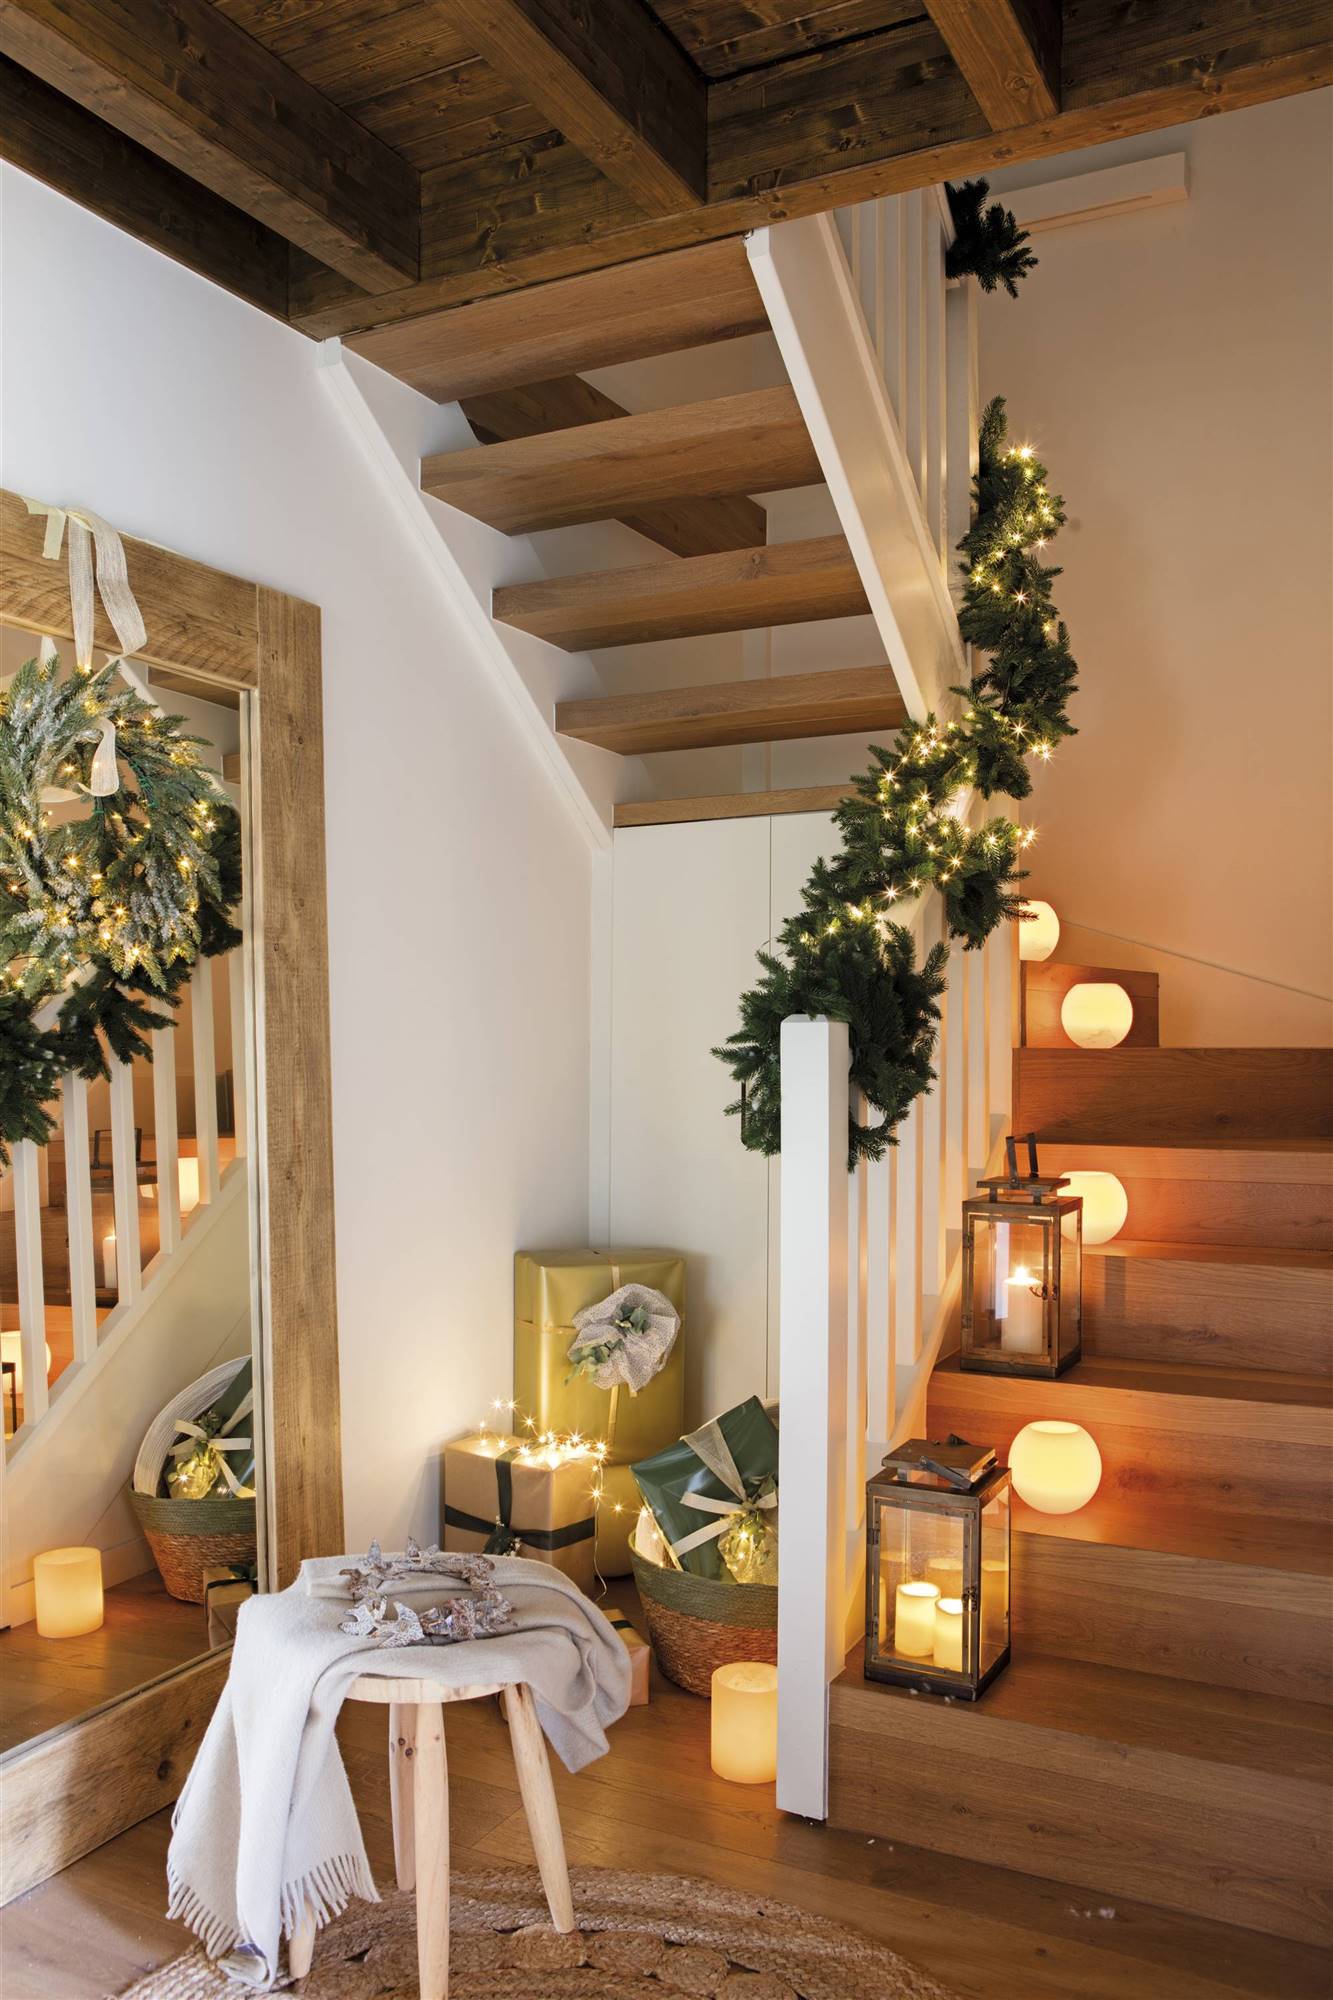 Recibidor con las escaleras decoradas por Navidad. 